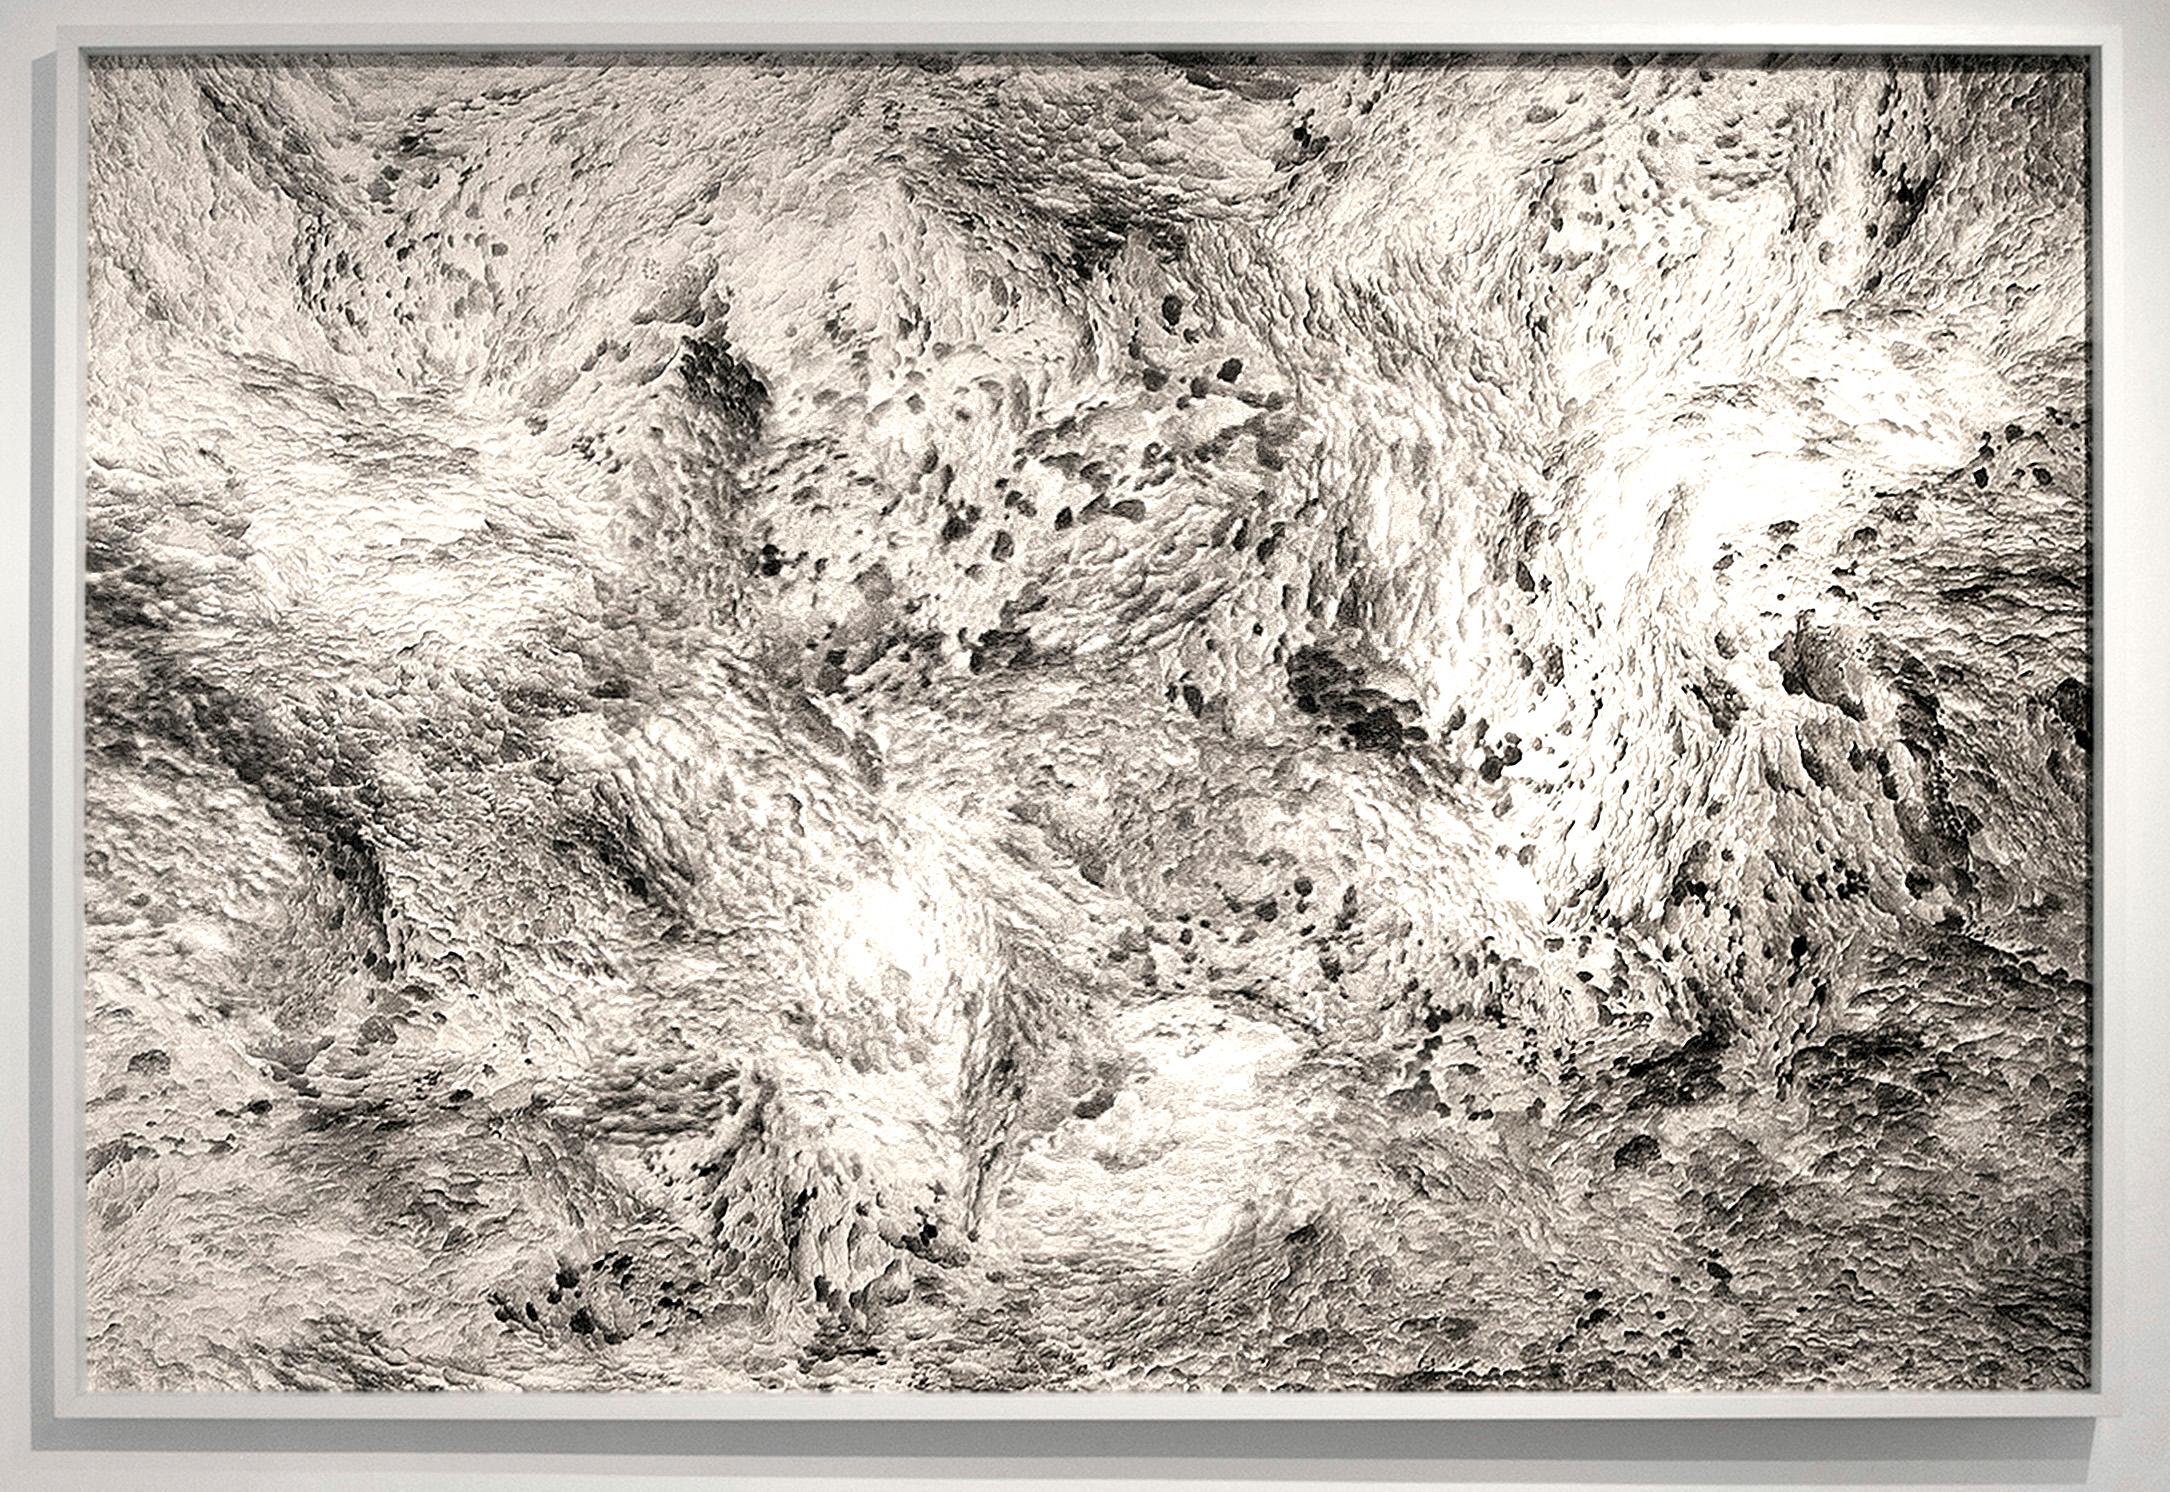 Hubert Blanz Landscape Photograph - Feldforschung 02 - Contemporary Abstract Sponge Texture Photograph